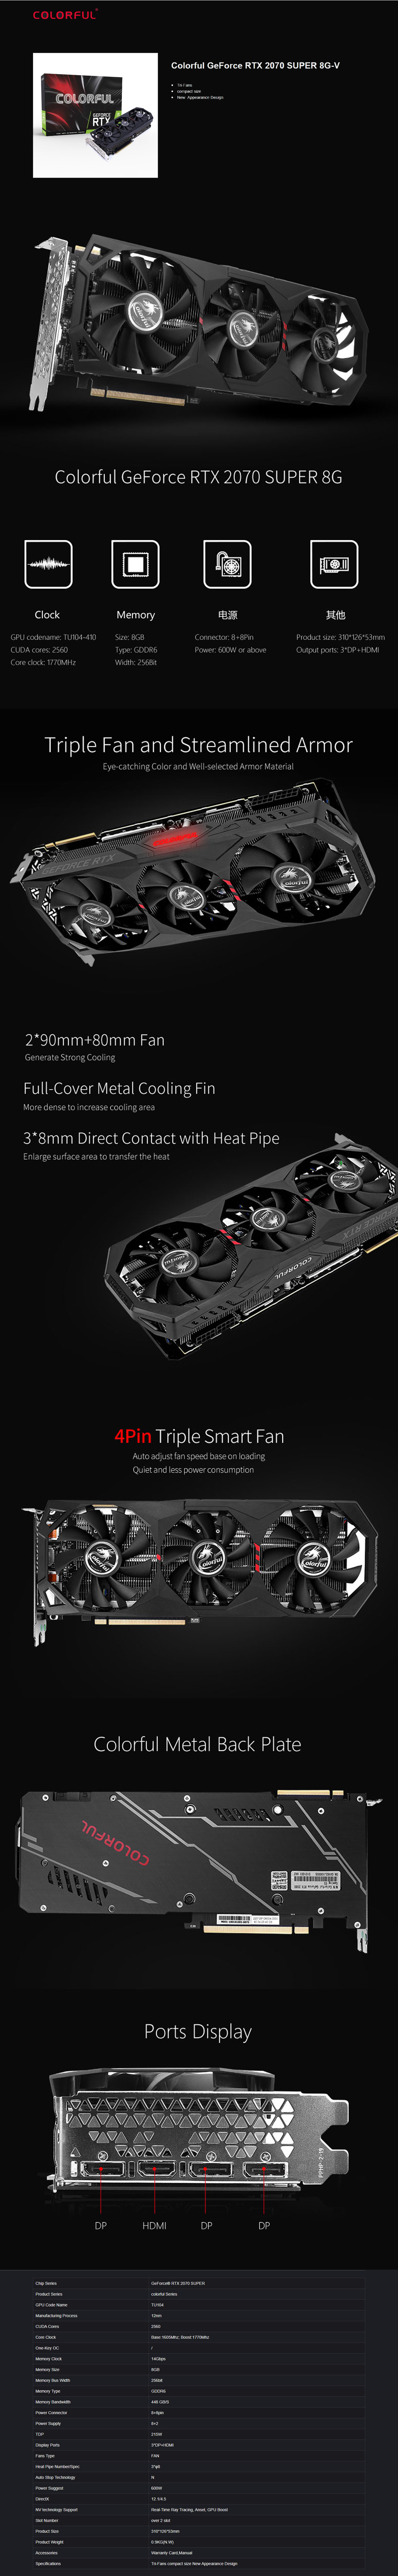 Buy Online Colorful GeForce RTX 2070 Super 8G-V GDDR6 (G-C2070S 8G-V)